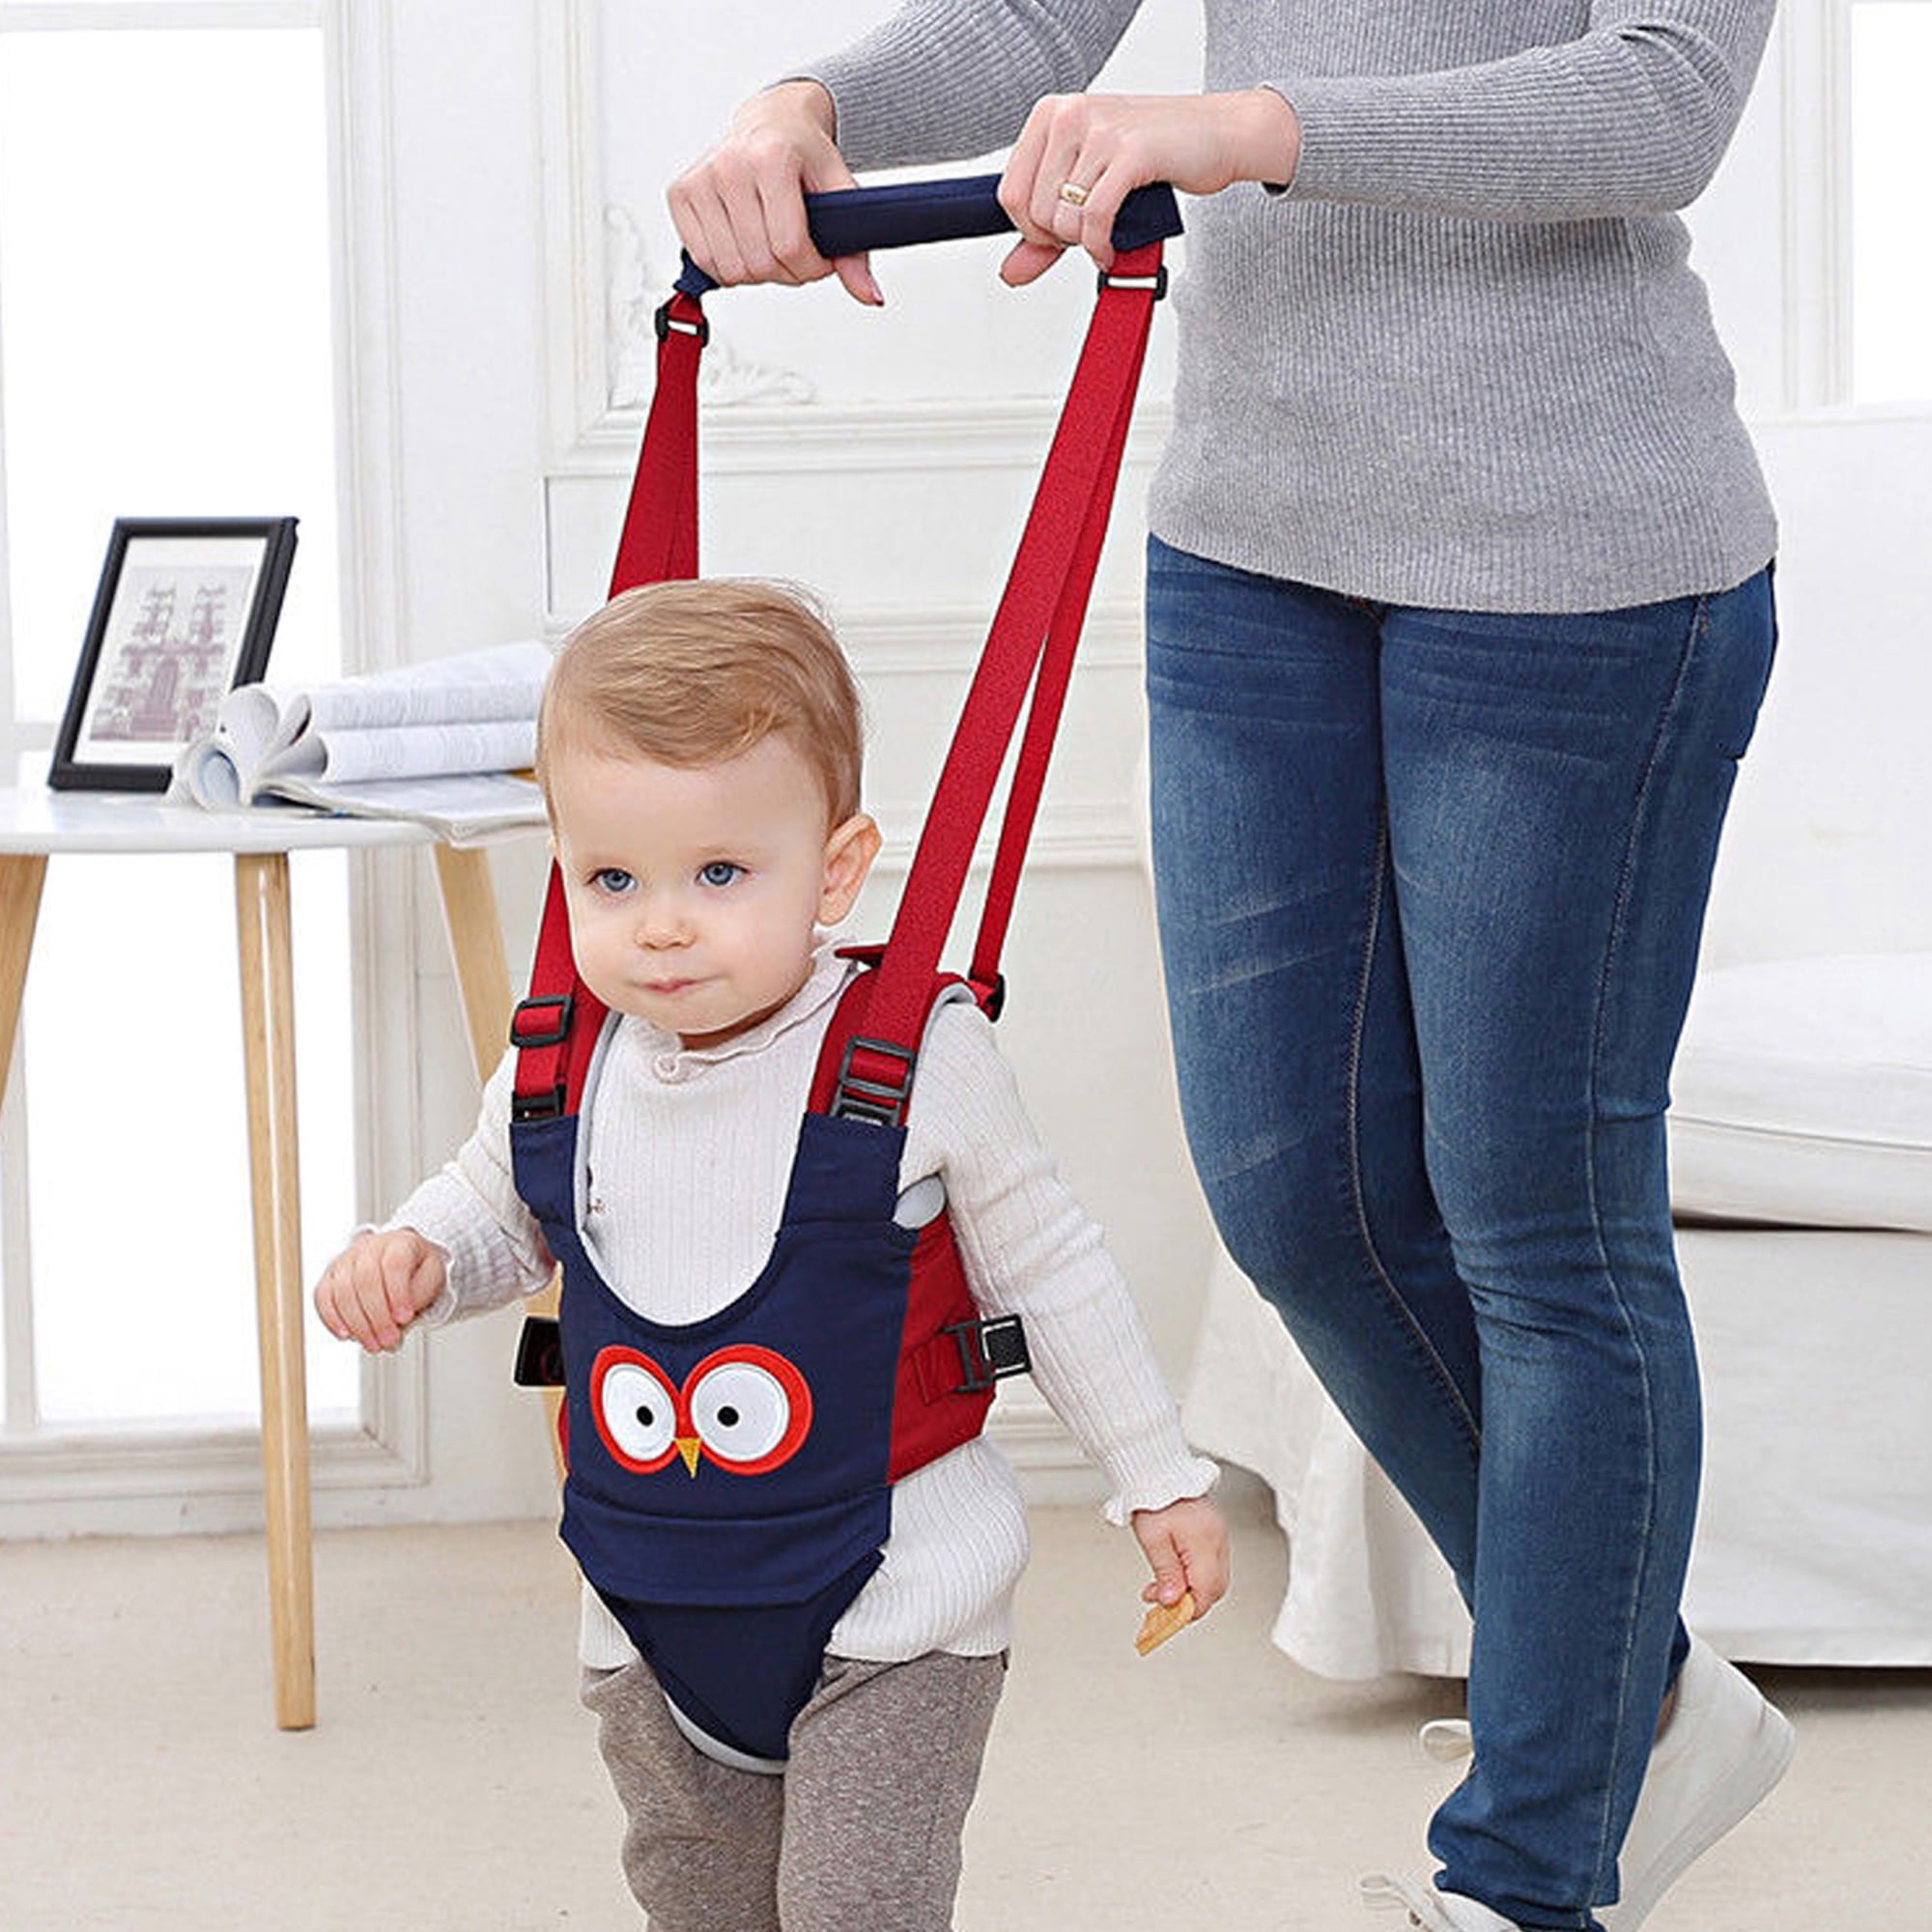 Mekysd Toddler Walking Assistant Fashion Harness Safety Toddler Belt Walking Wing Infant Kid Safe Guard Style Belt Green, 6-24 Months 